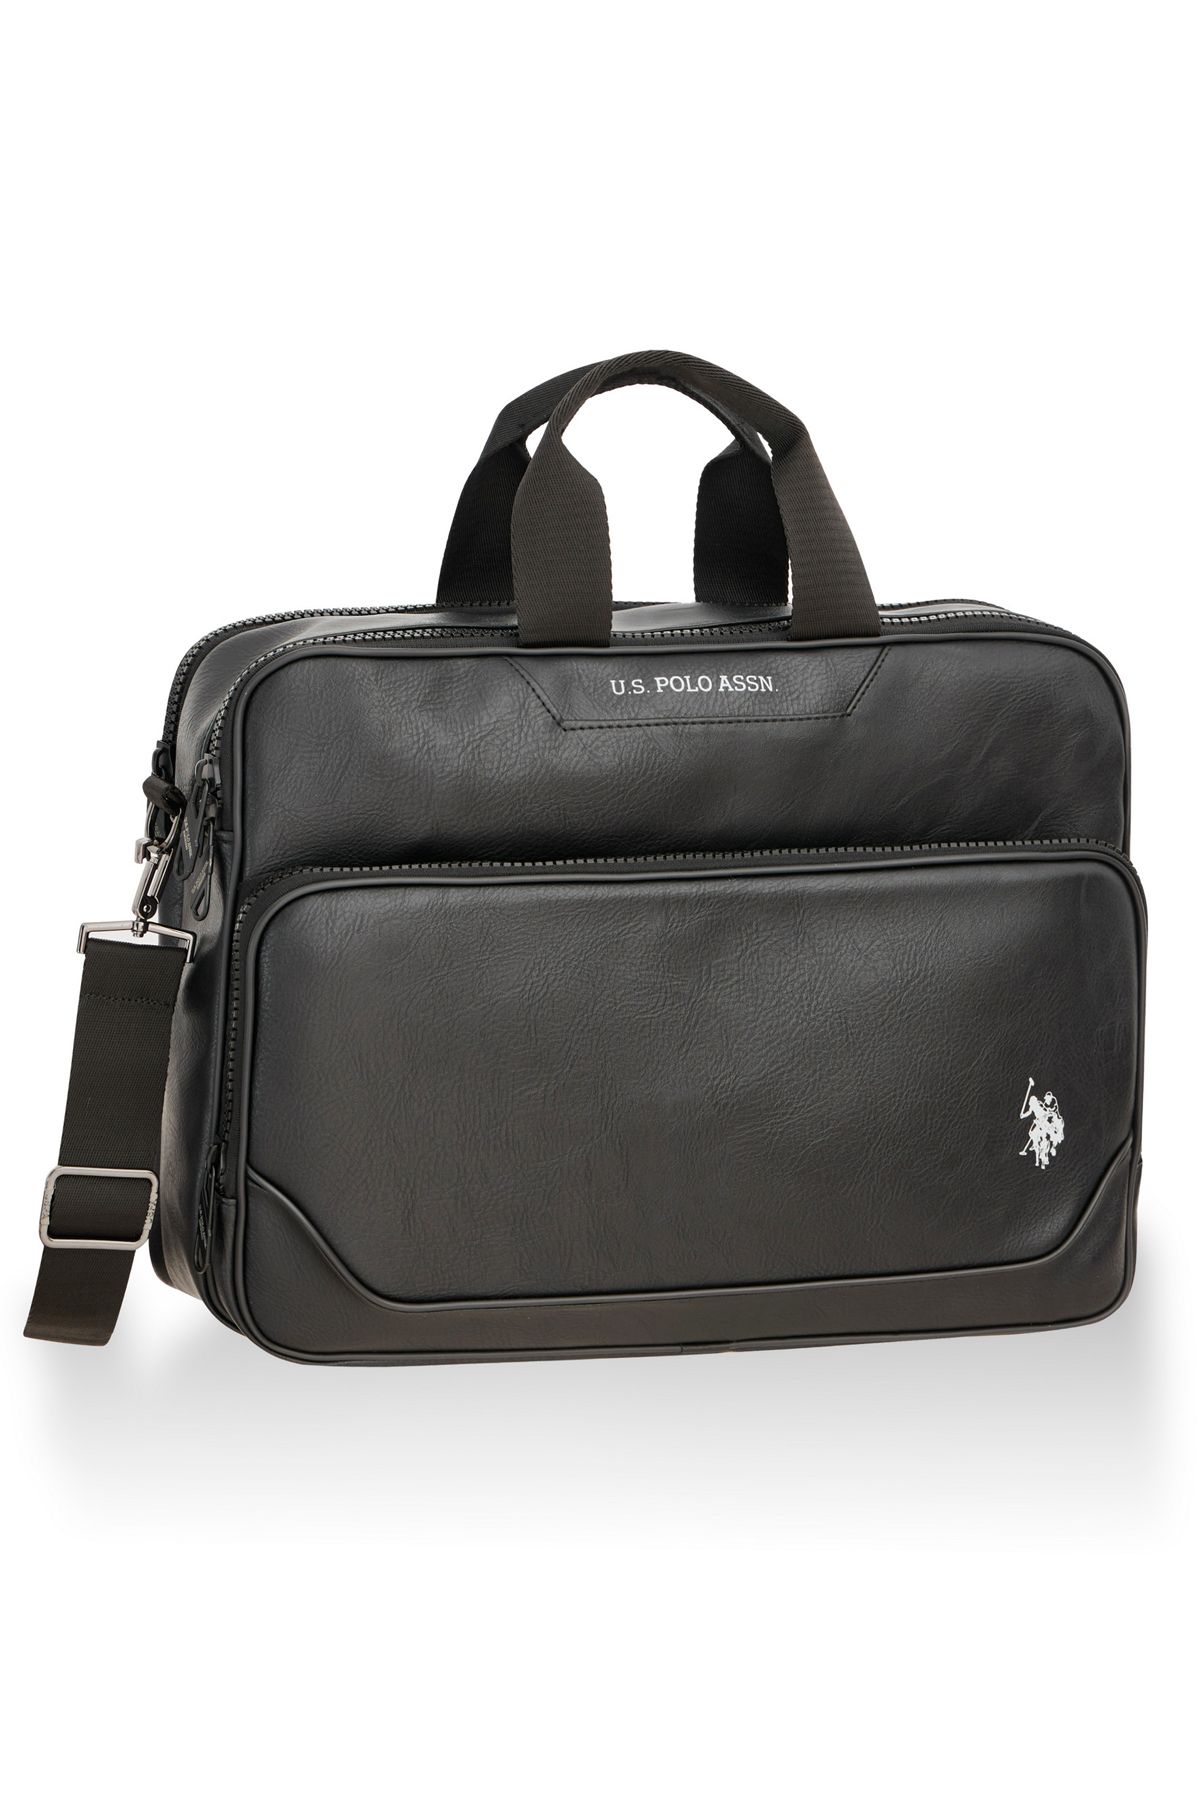 U.S. Polo Assn. U.S. Polo Assn 23666-23667 Evrak çantası laptop çantası askılı çanta Macbook SİYAH